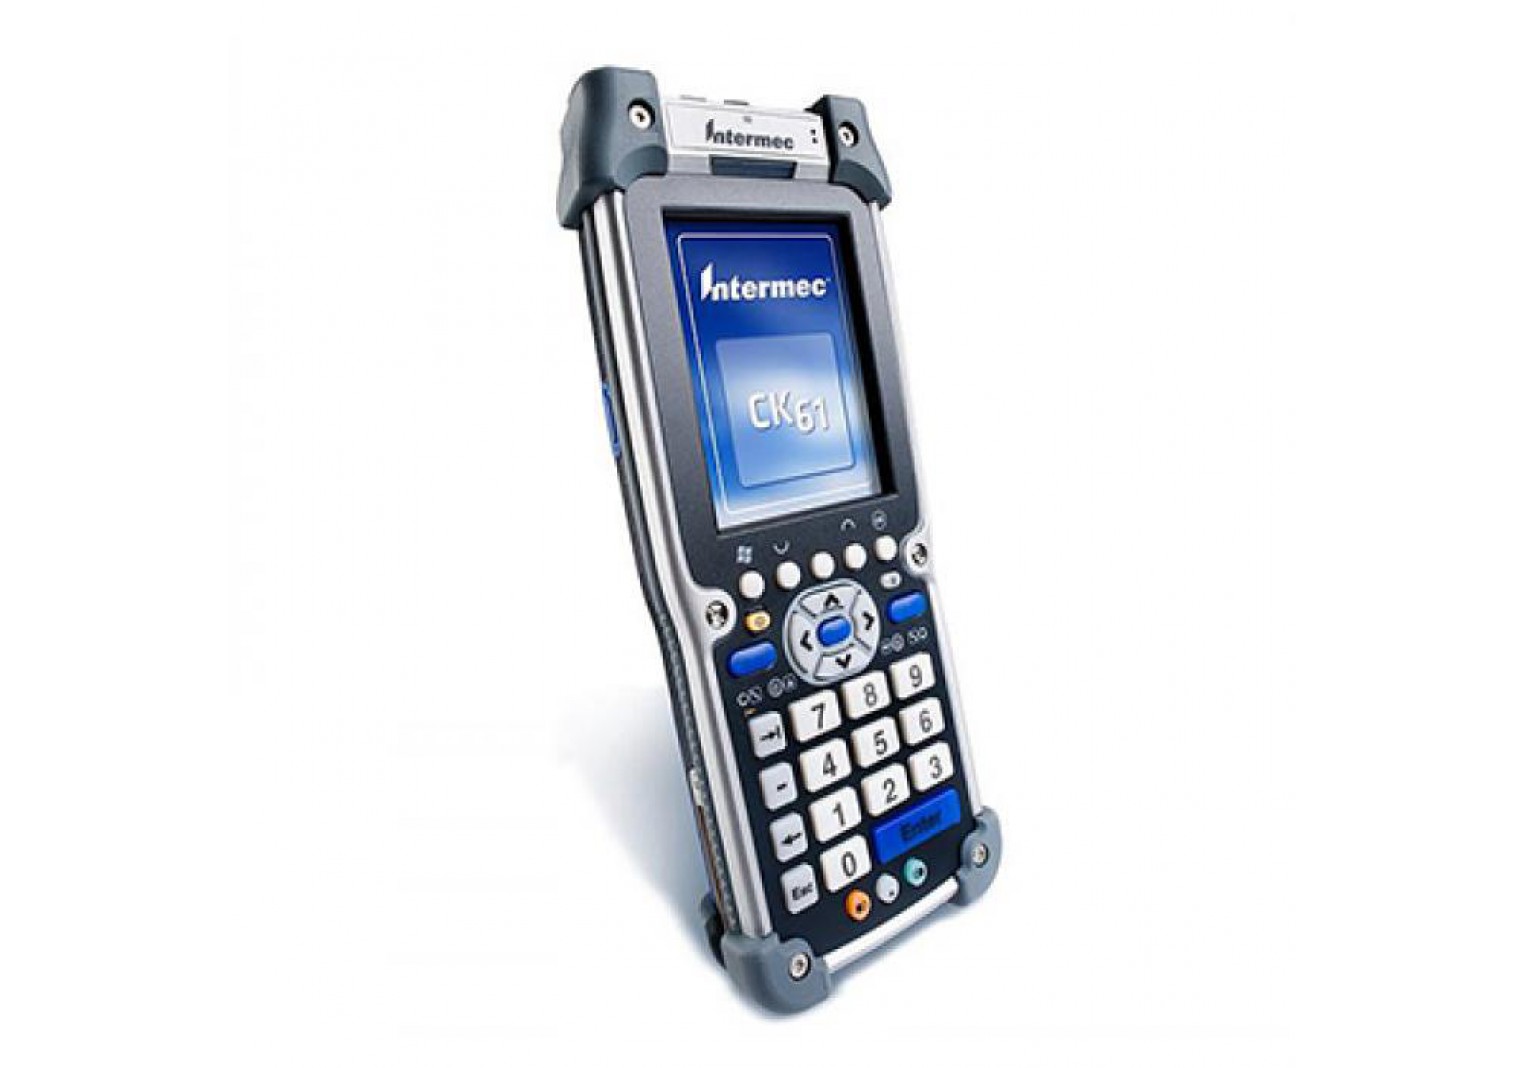 เครื่องอ่านบาร์โค้ดมือถือ Intermec CK61 Handheld Barcode Scanner